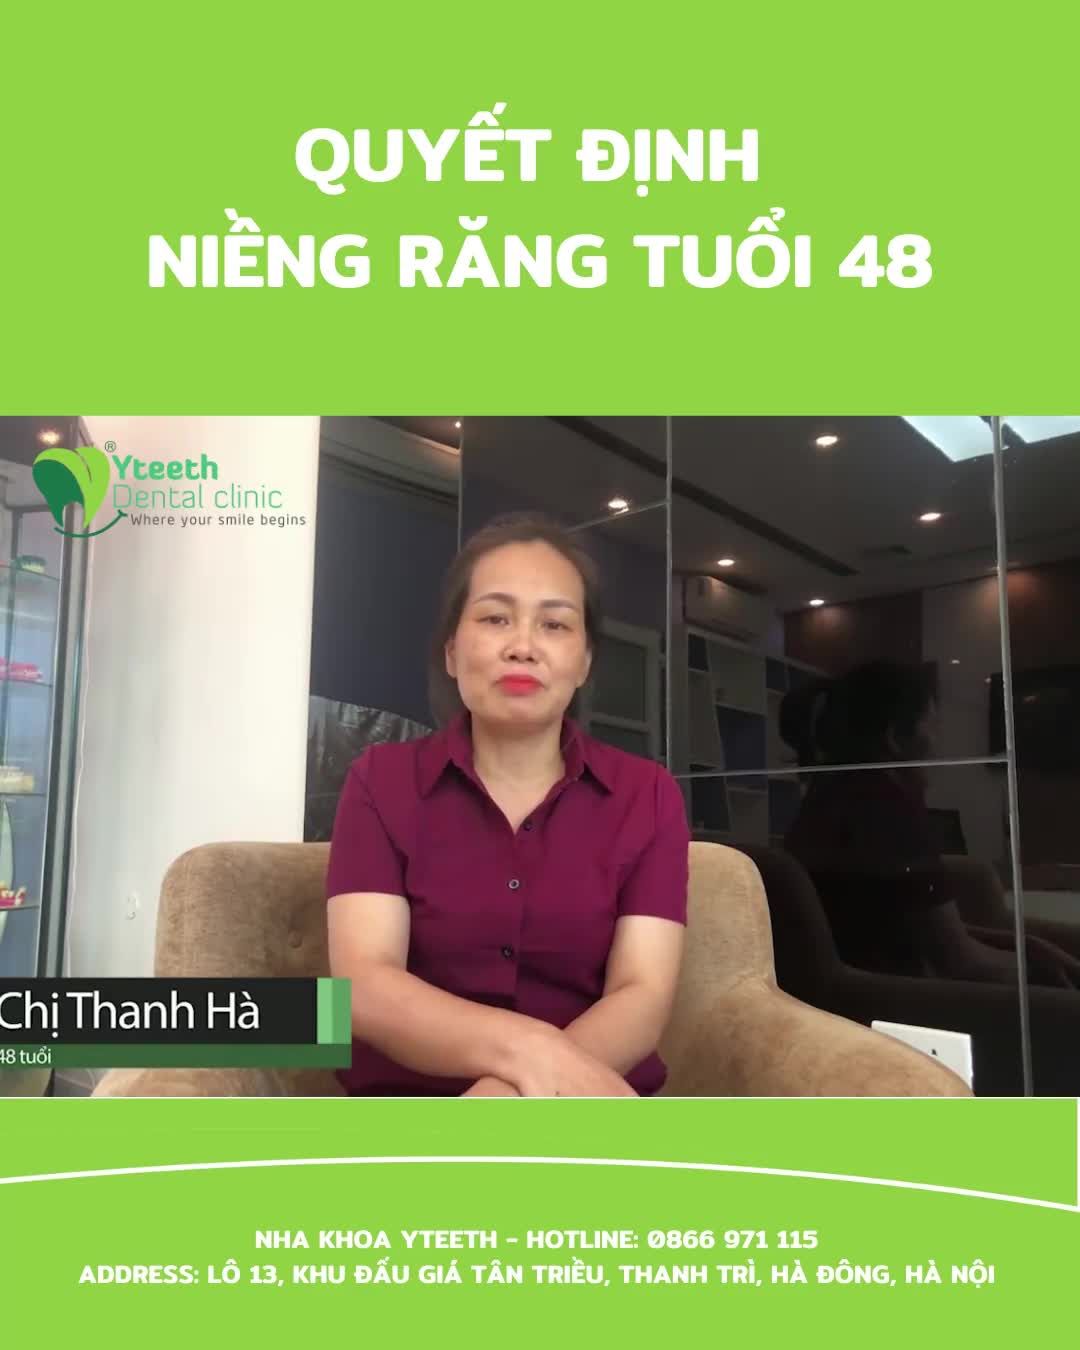 Cô Thanh Hà là một người bạn và cũng là một khách hàng rất đặc biệt của nha khoa Yteeth